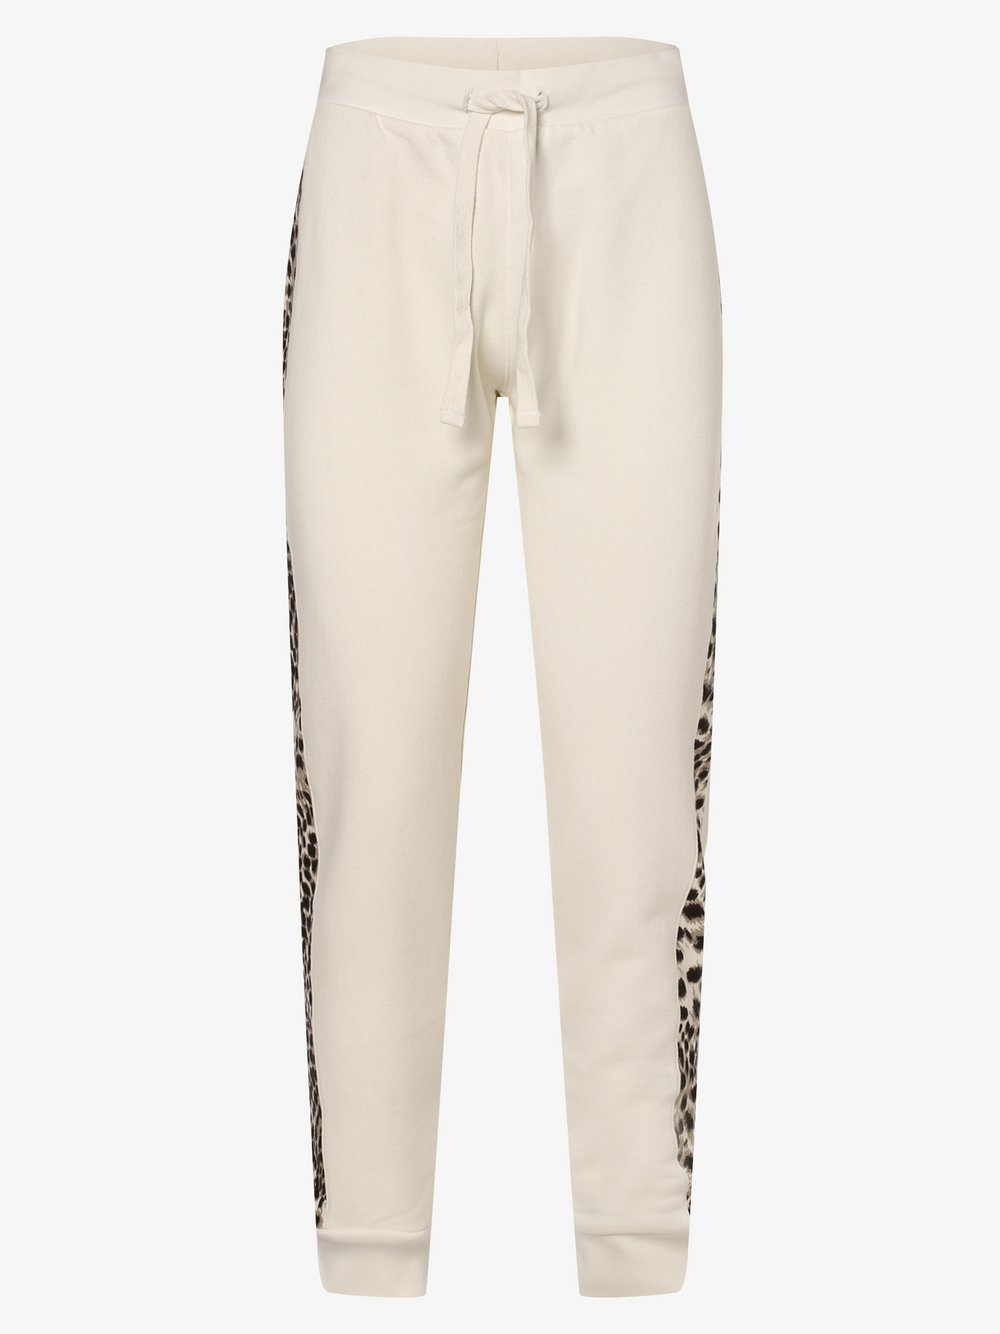 Key Largo - Damskie spodnie dresowe, biały|wielokolorowy